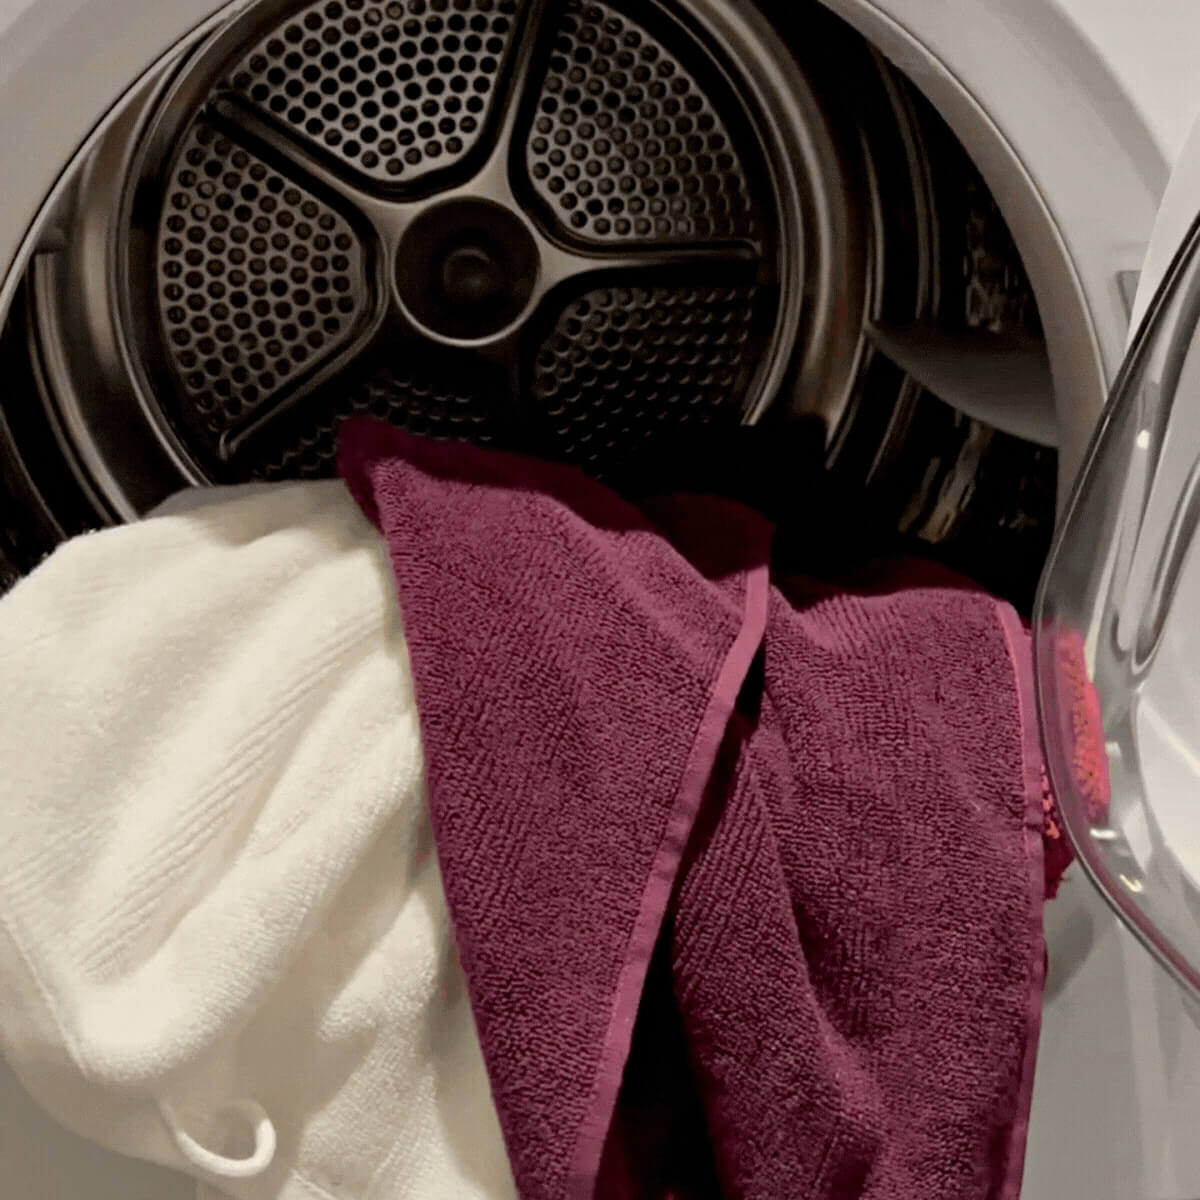 Økologiske håndklæder ligger i vaskemaskinen. Der er to håndklæder i farven hvid og bordeaux. 